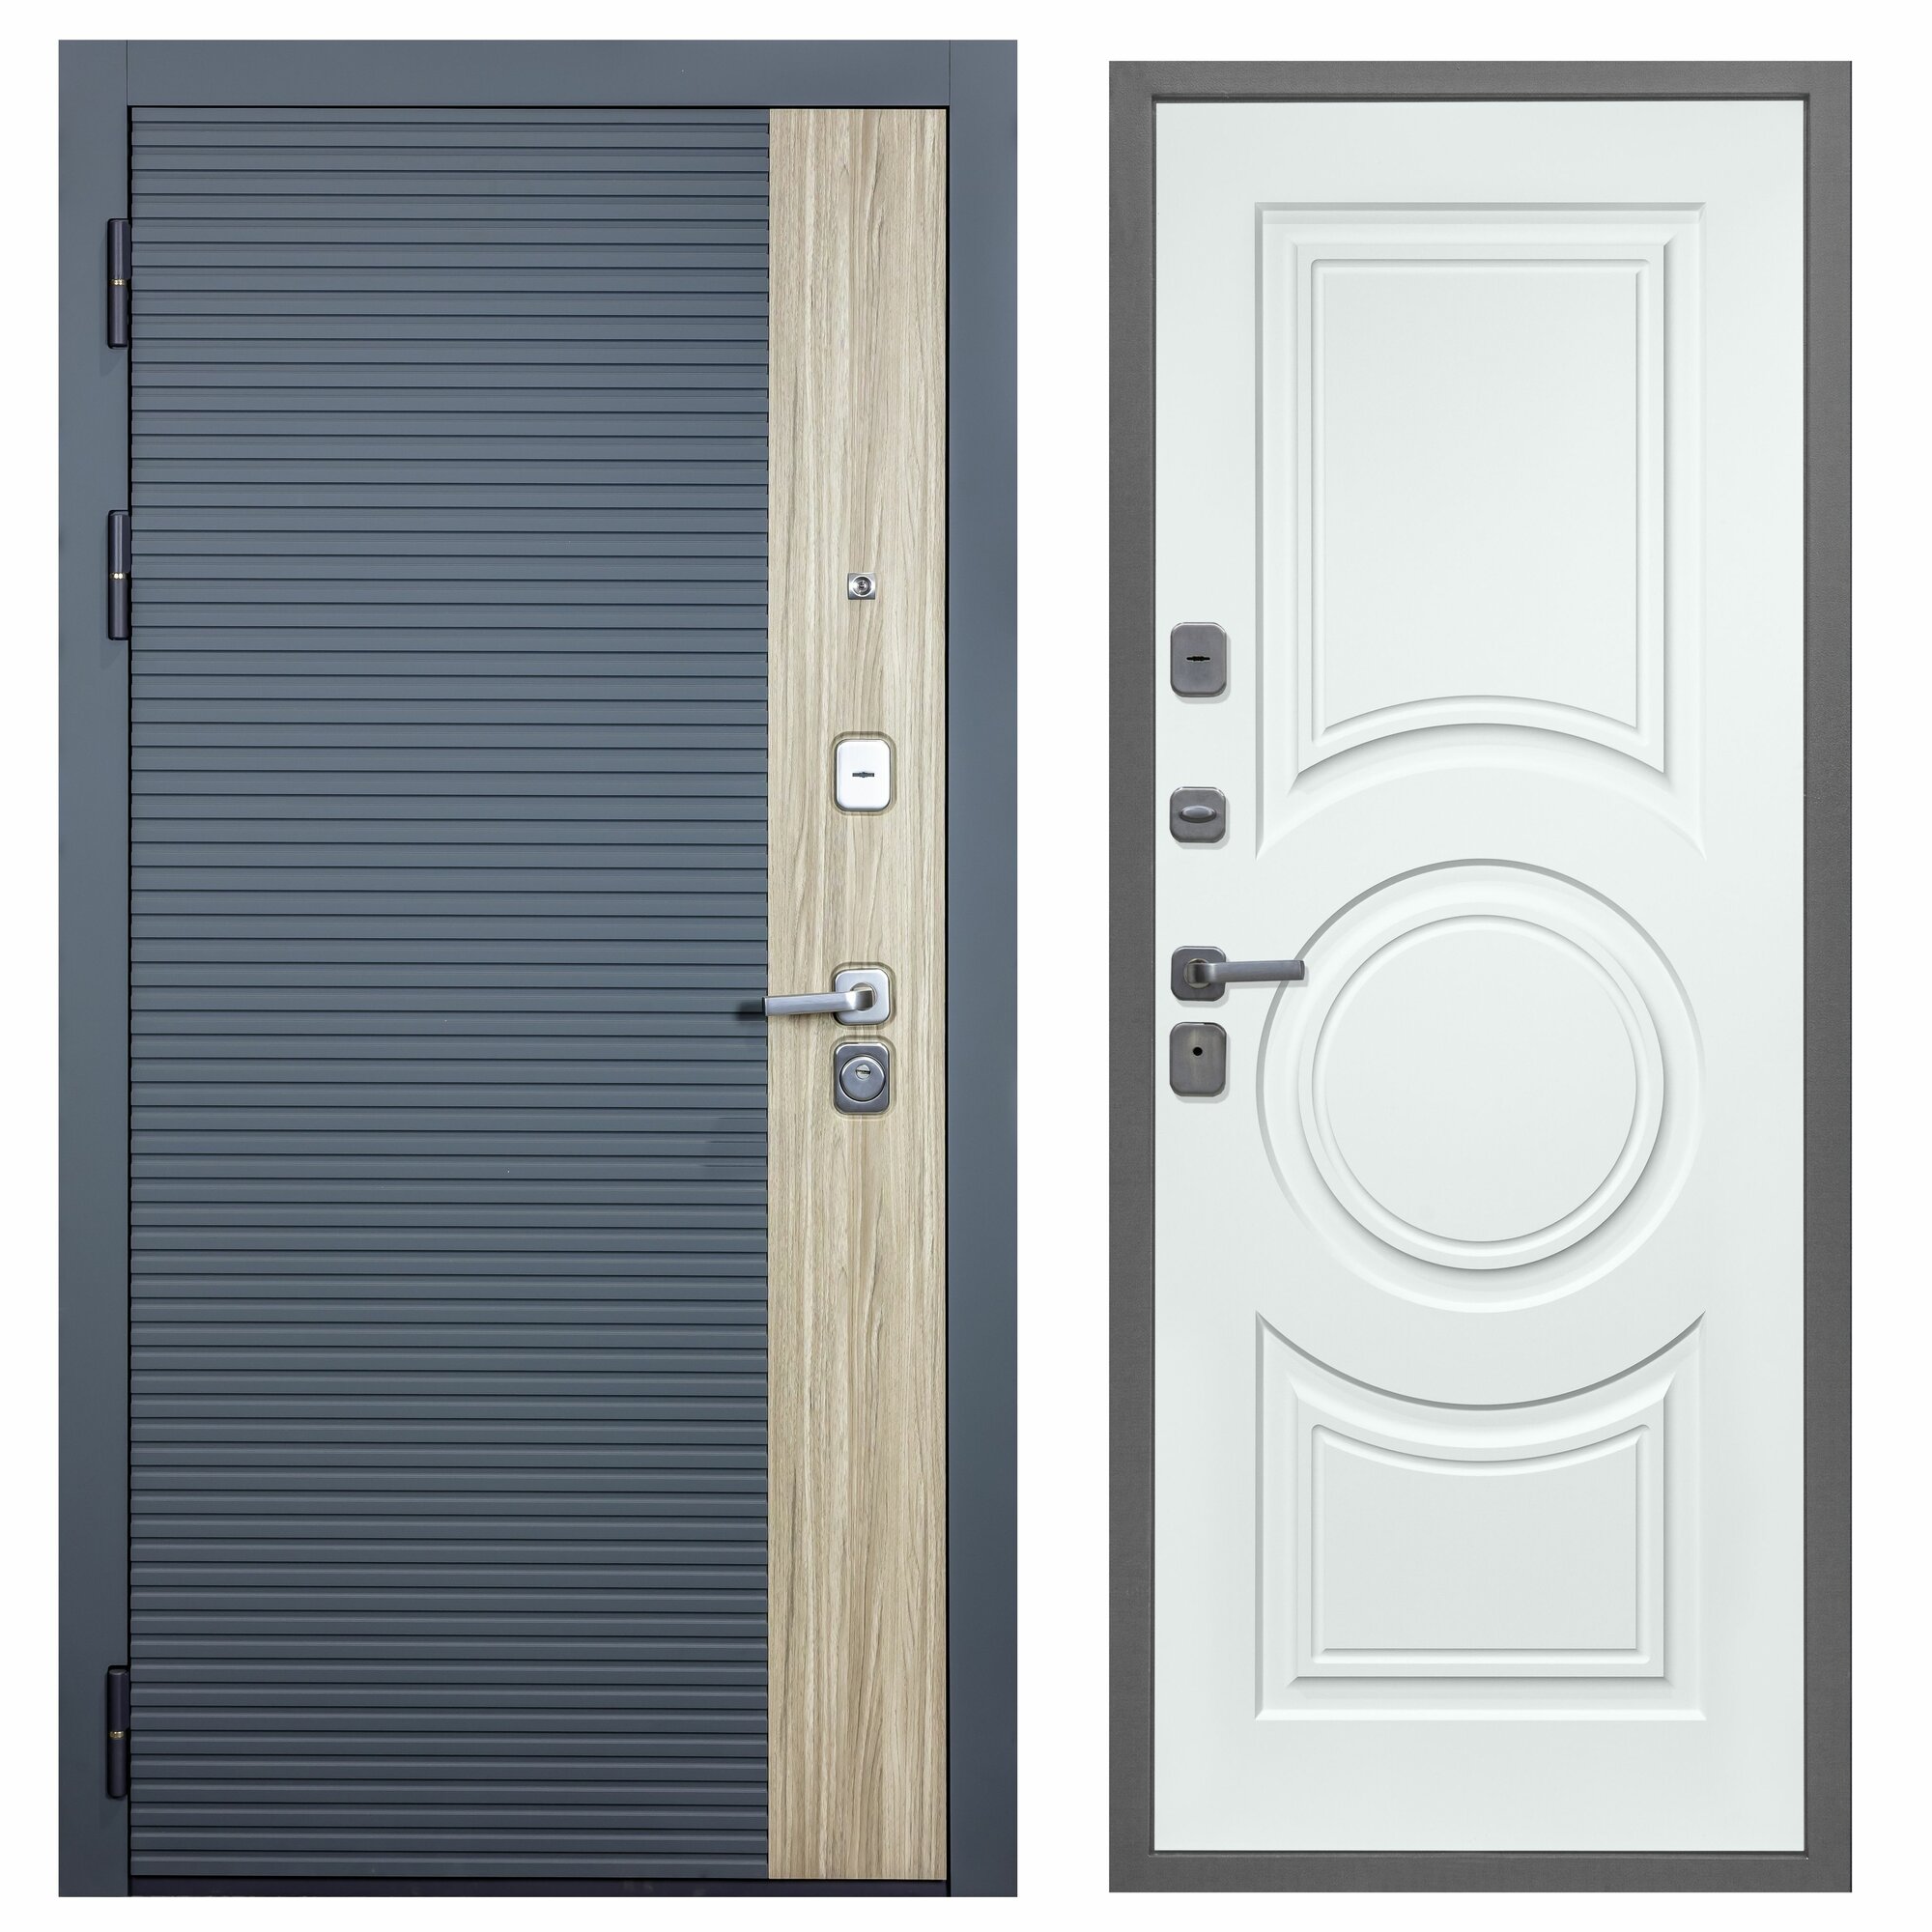 Дверь входная металлическая DIVA-76 2050*860 Левая (Дуб / Серая - Д8 Белый софт) тепло-шумоизоляция антикоррозийная защита для квартиры.